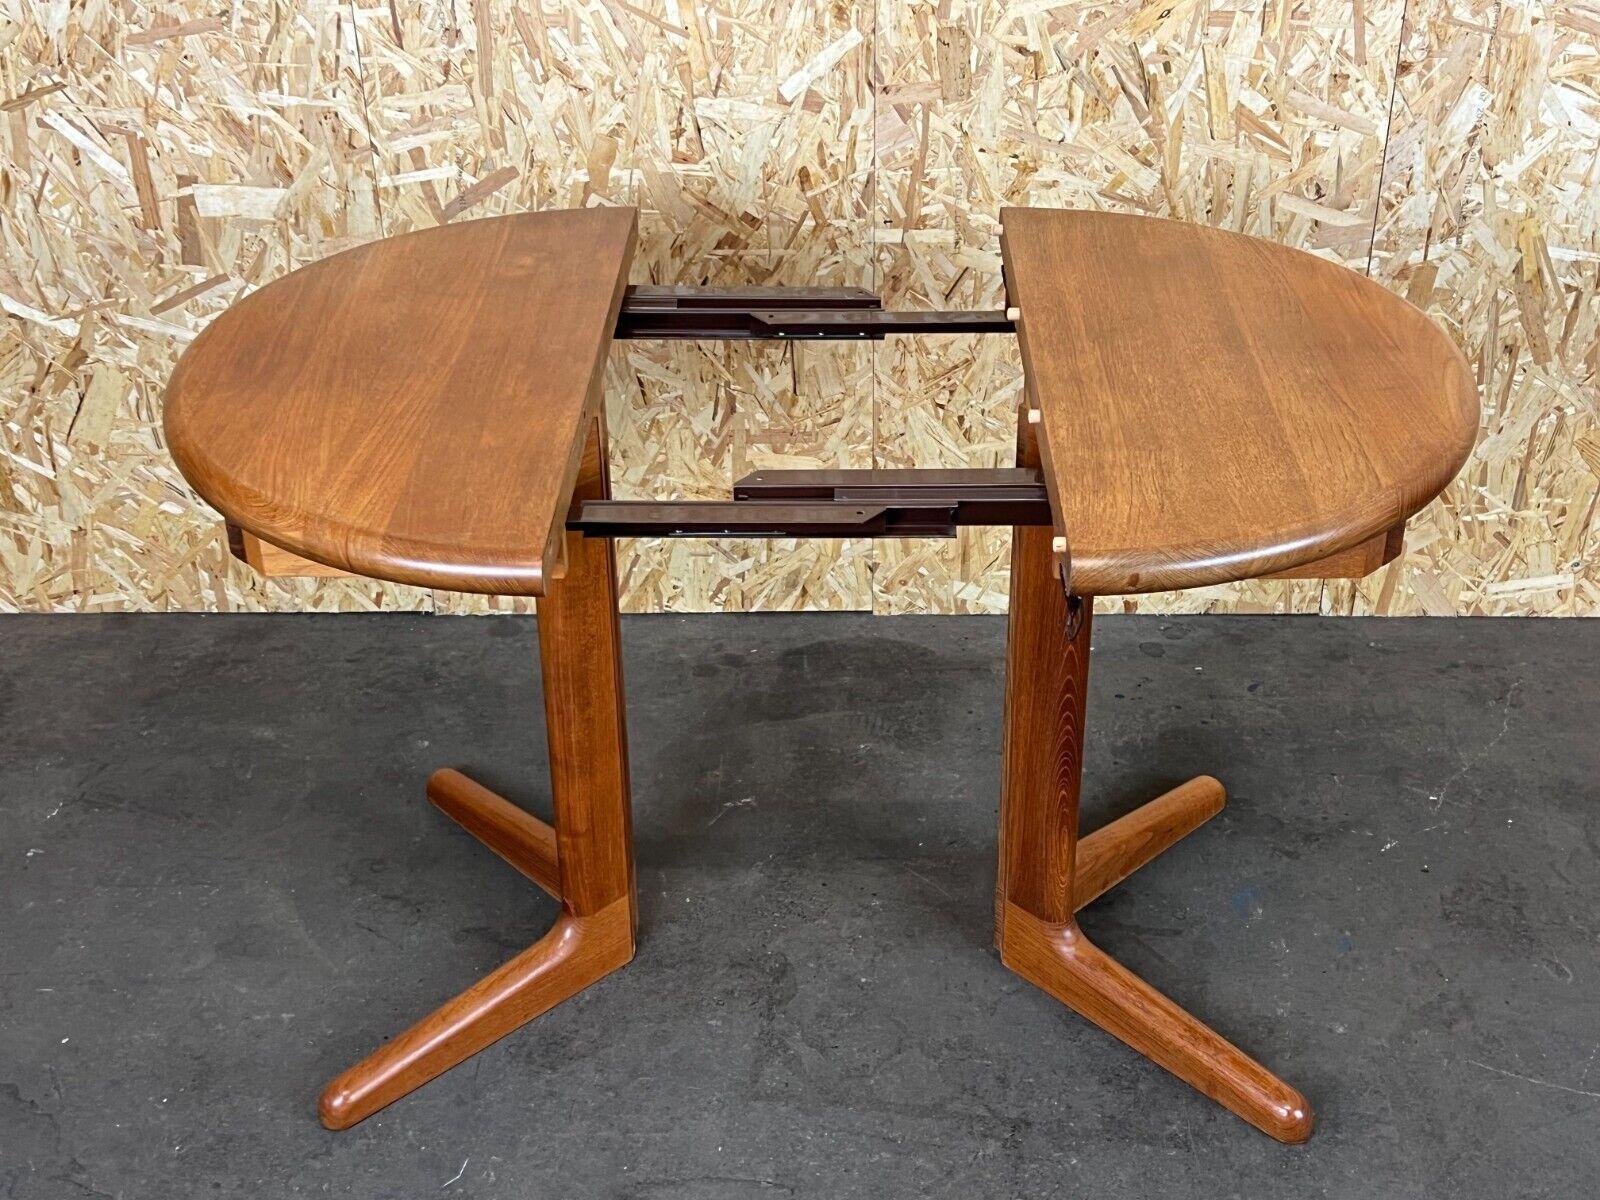 1960s-1970s Teak Dining Table Side Table Korup Design Danish Denmark 10